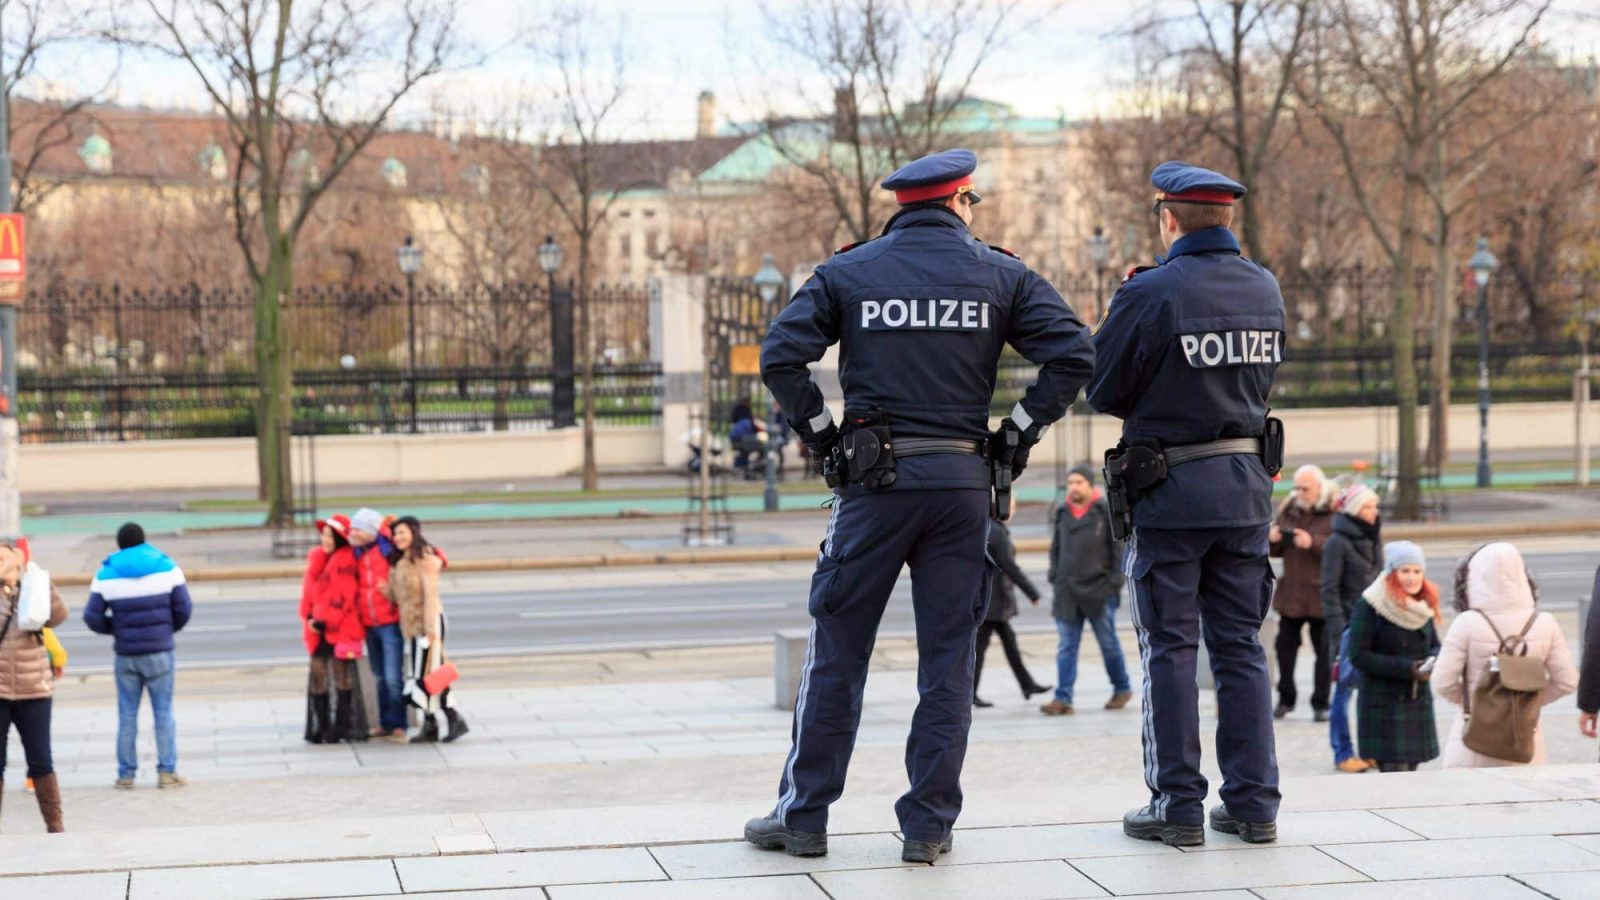 Polizeiuniform Österreich